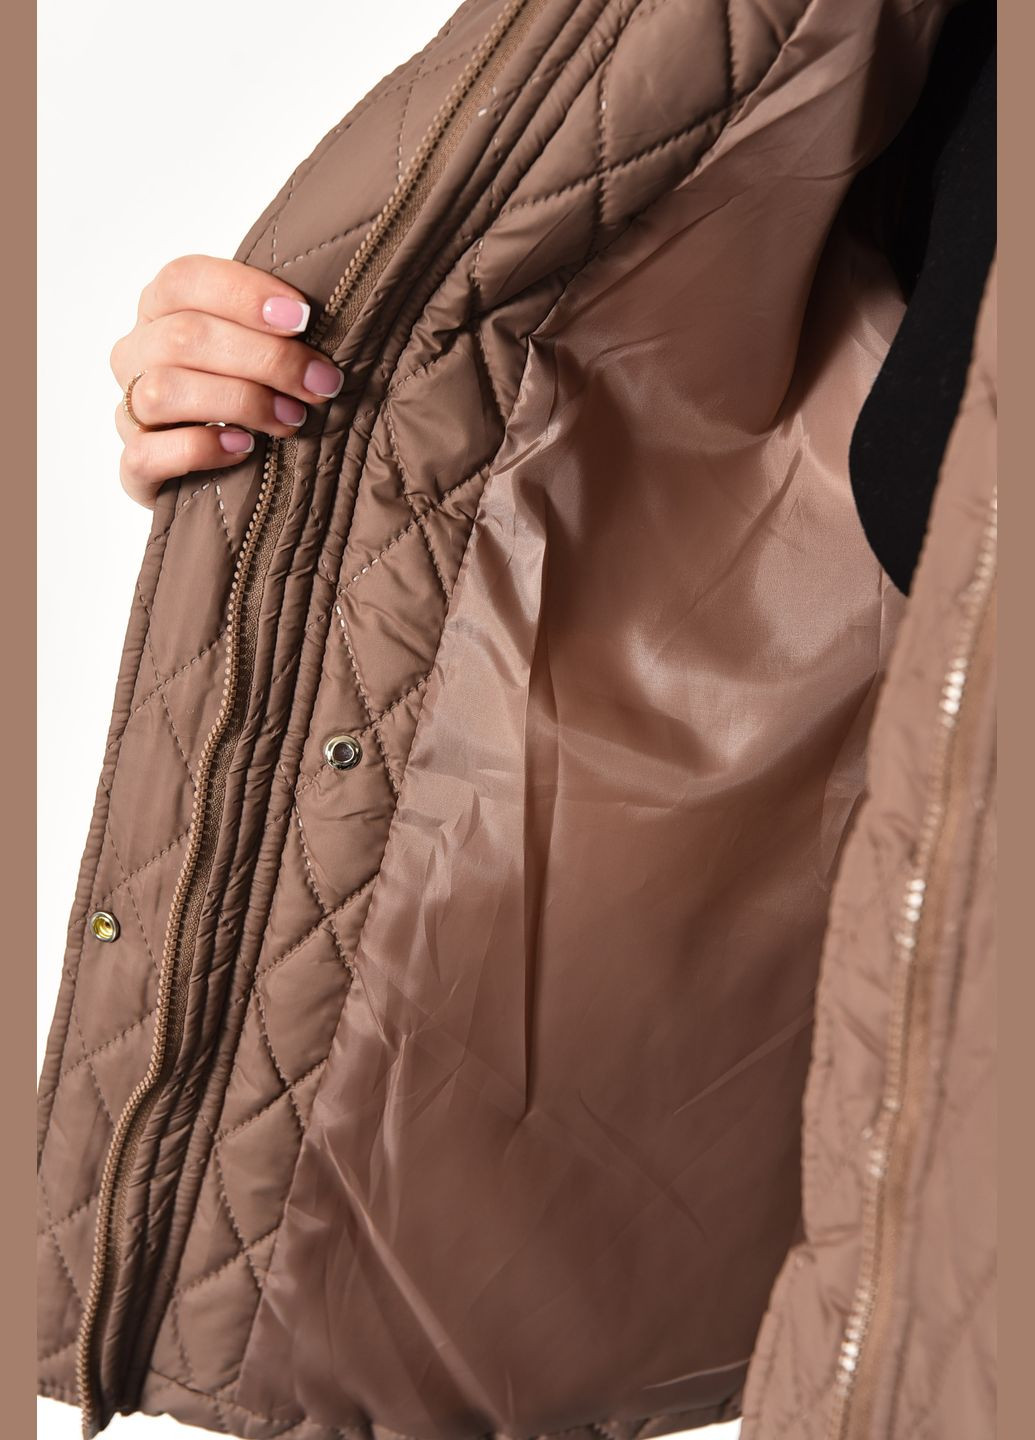 Коричневая демисезонная куртка женская демисезонная коричневого цвета Let's Shop